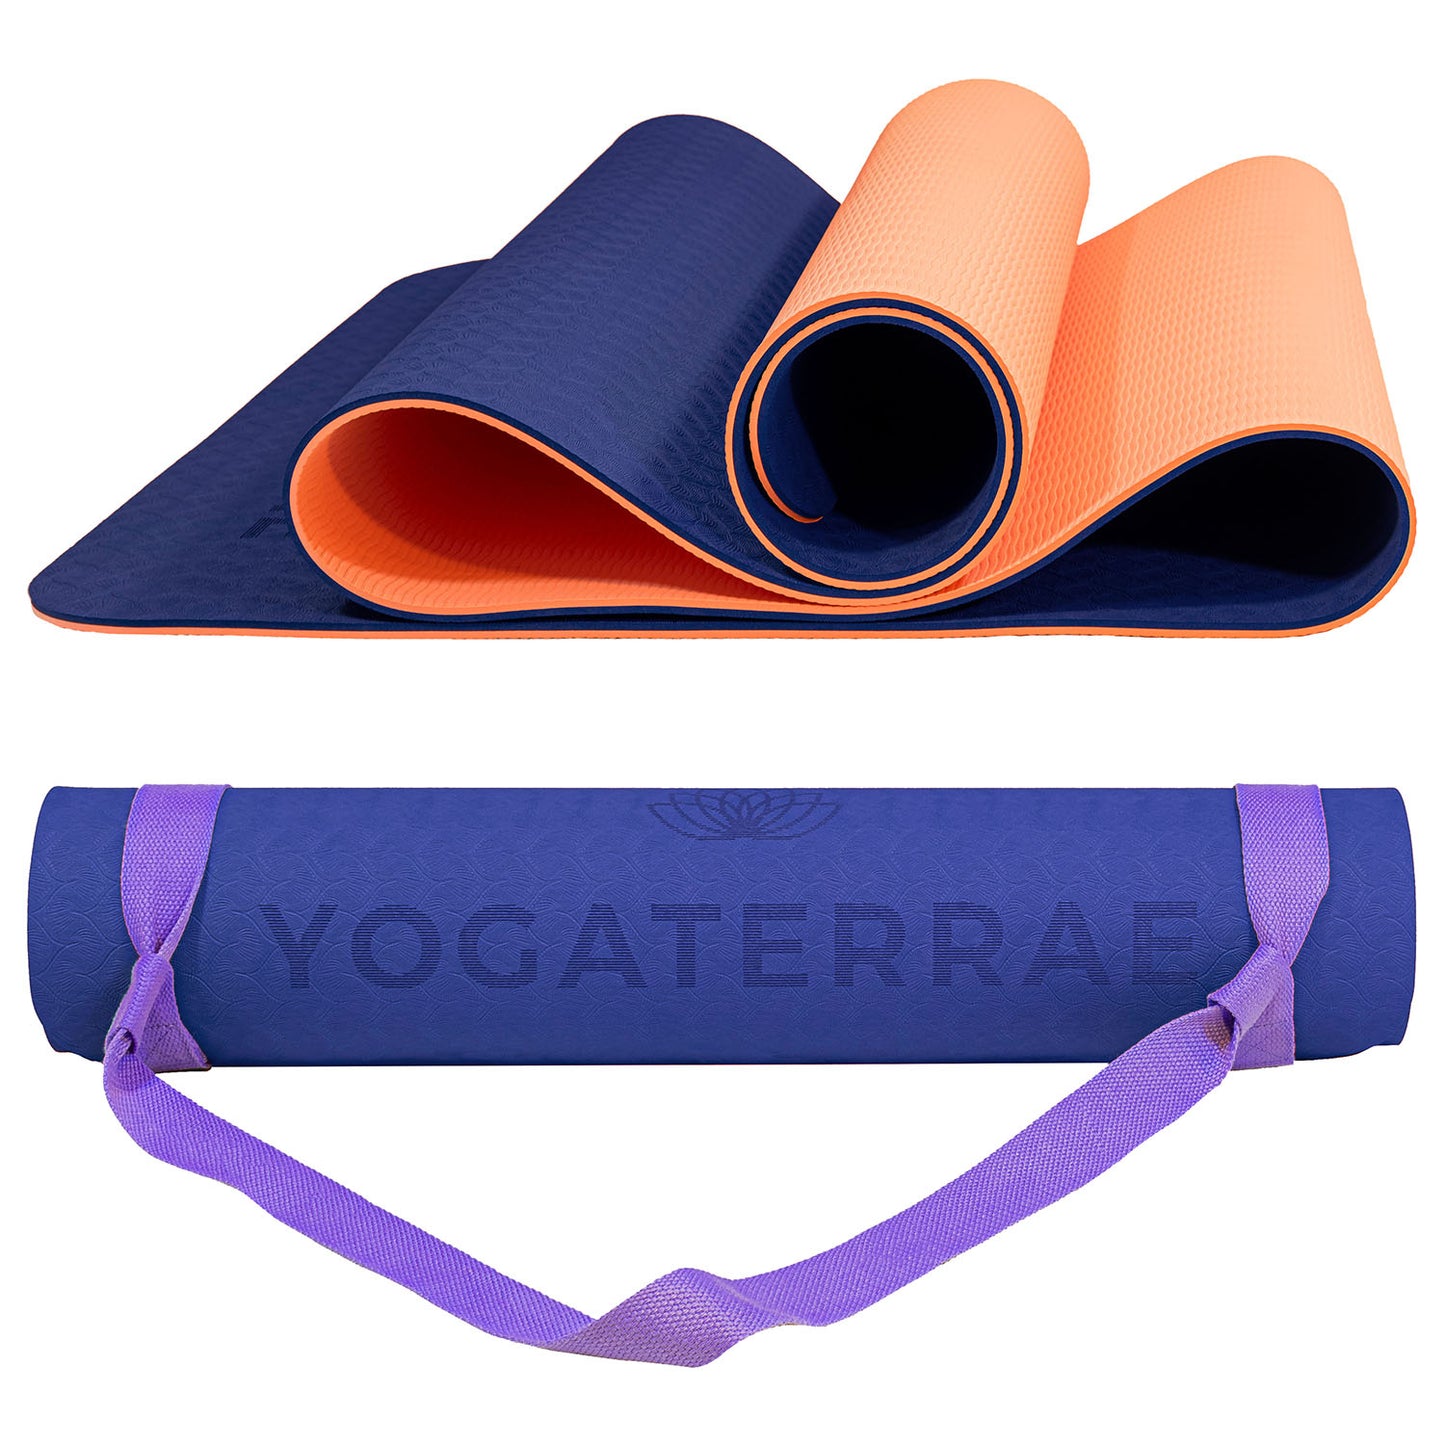 ⇒ Tapis de Yoga épais : Comparatif et conseils pour bien choisir